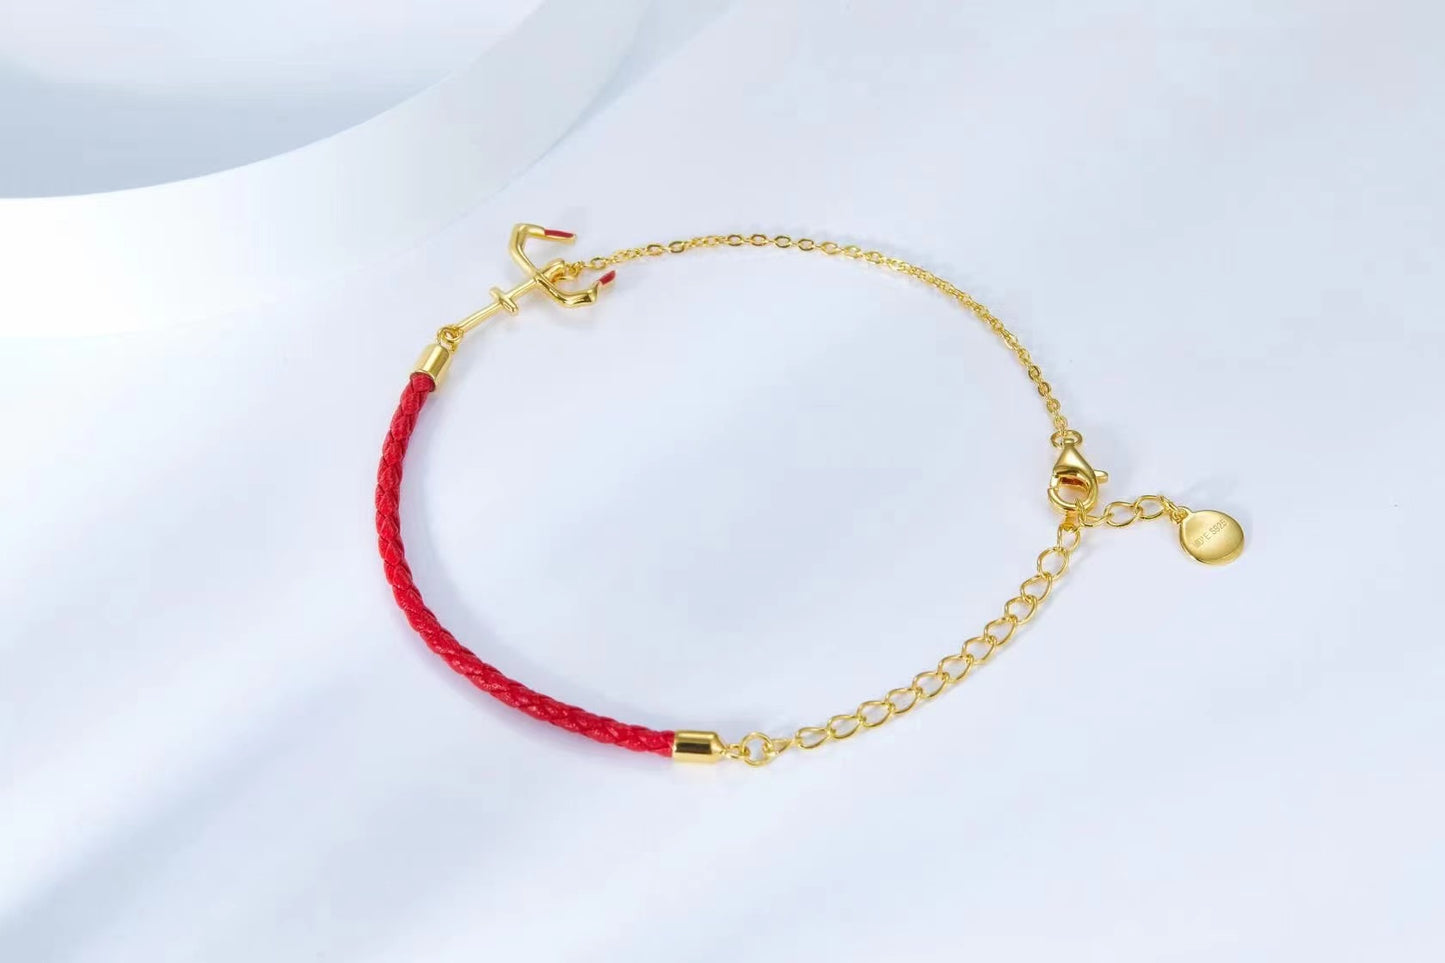 Golden Chain with Enamel Bracelet for Women